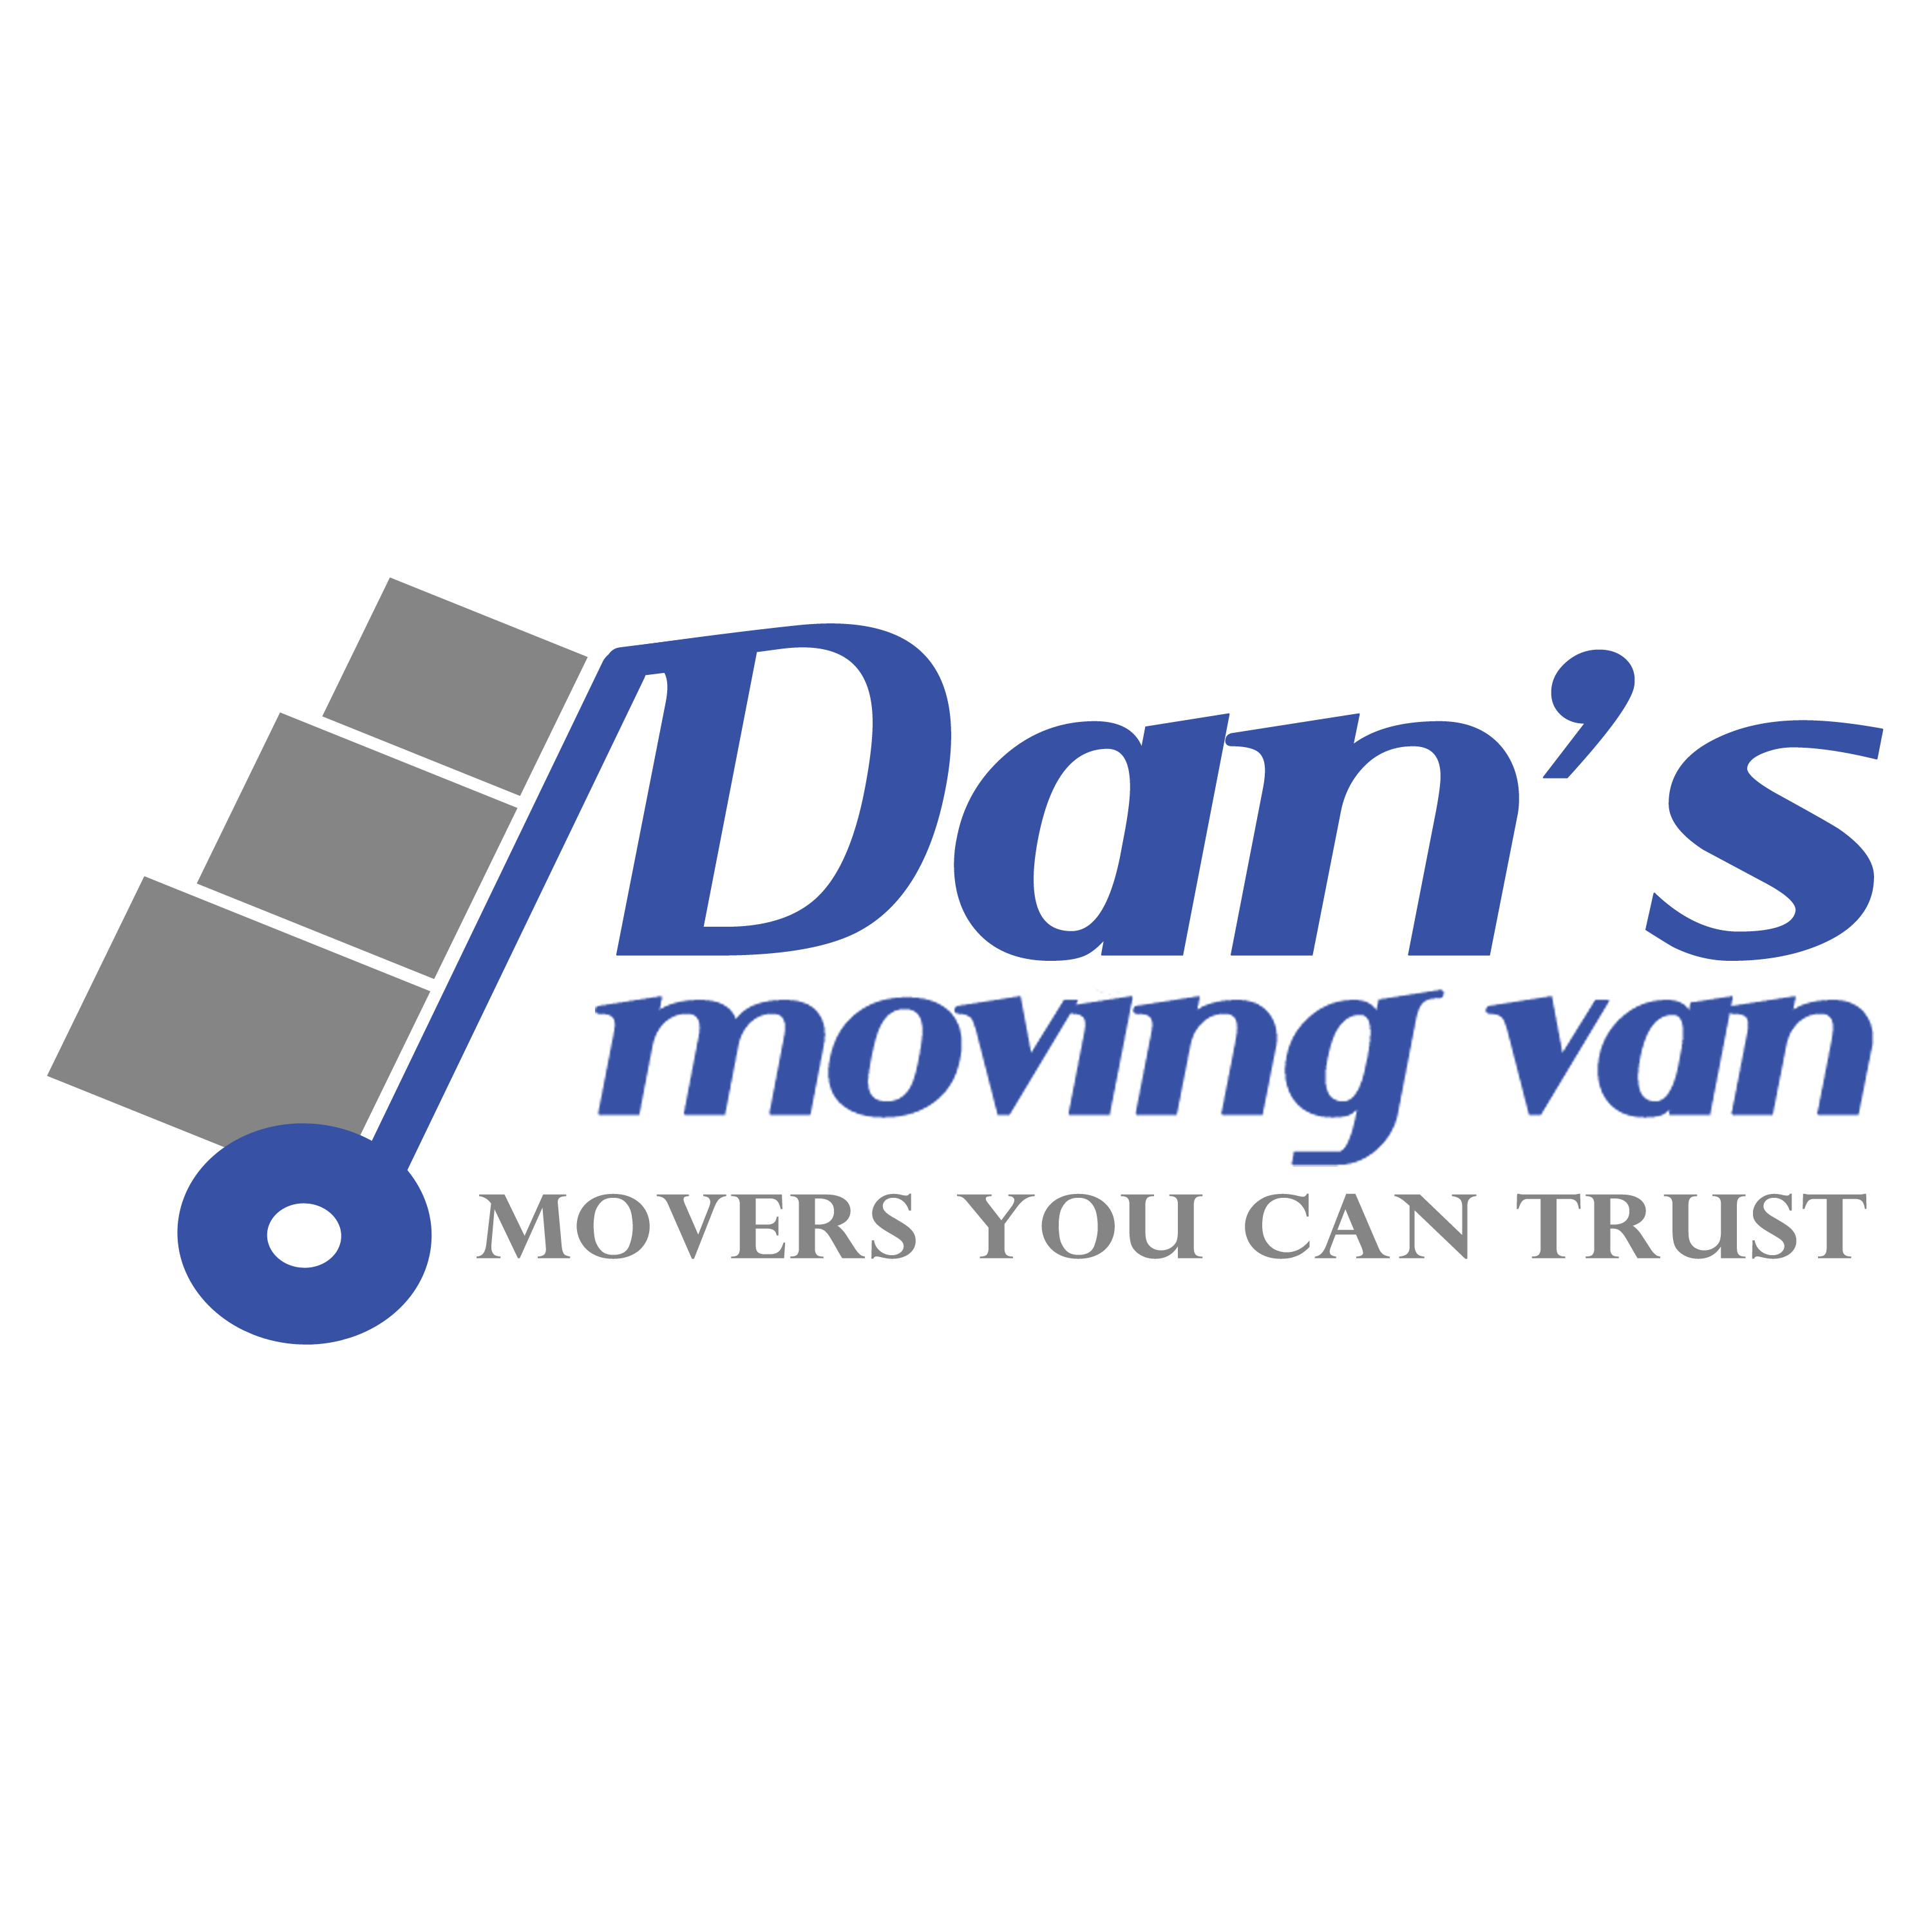 Dan’s Moving Van, LLC - Green Bay, WI - (920)819-4021 | ShowMeLocal.com